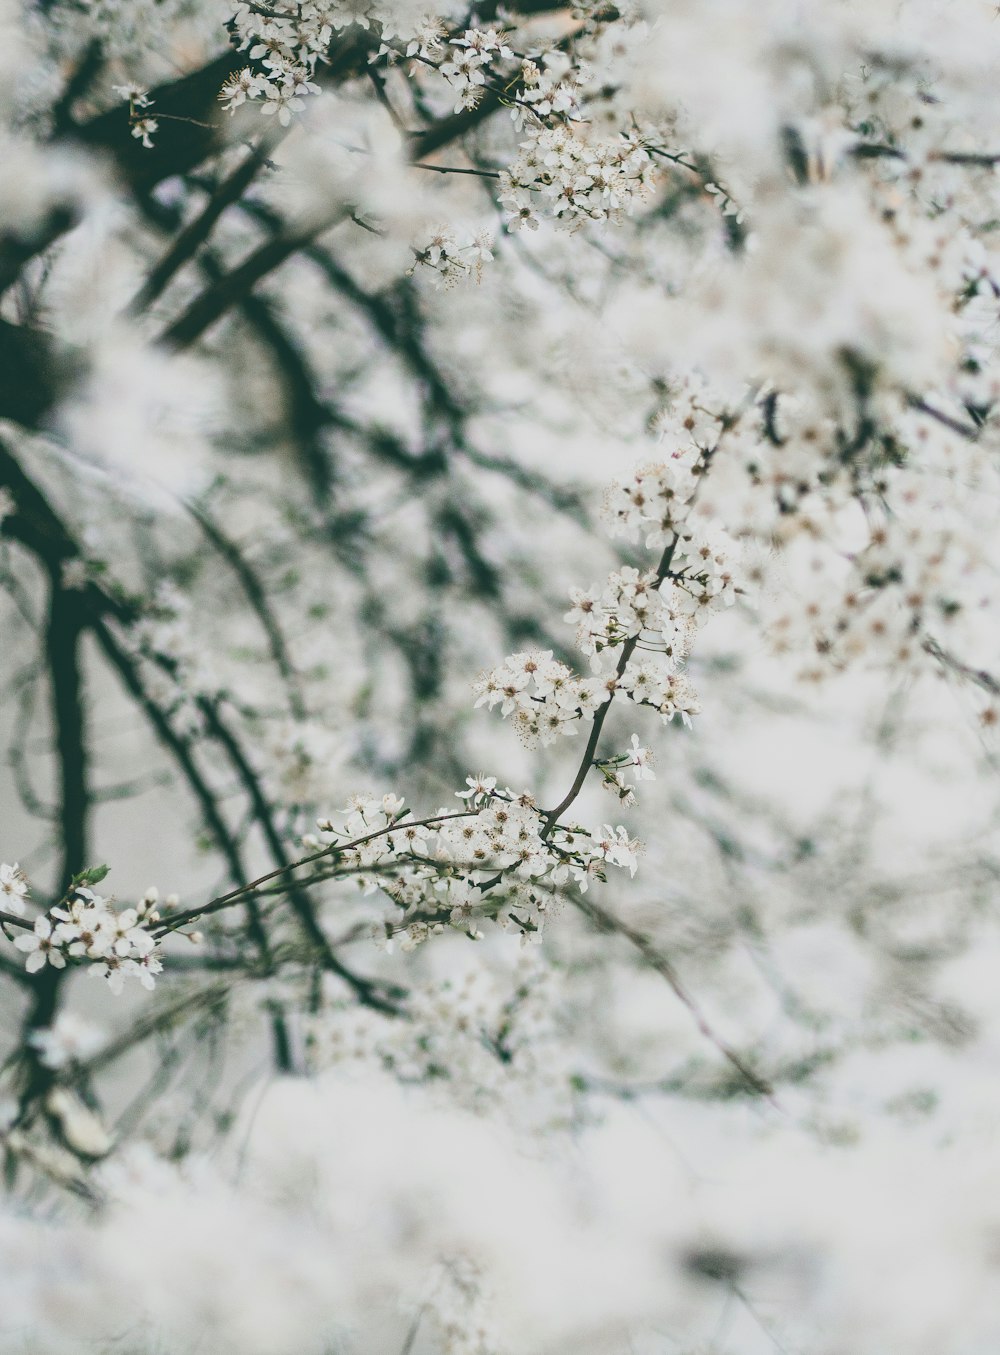 흰 꽃이 만발한 나무의 클로즈업